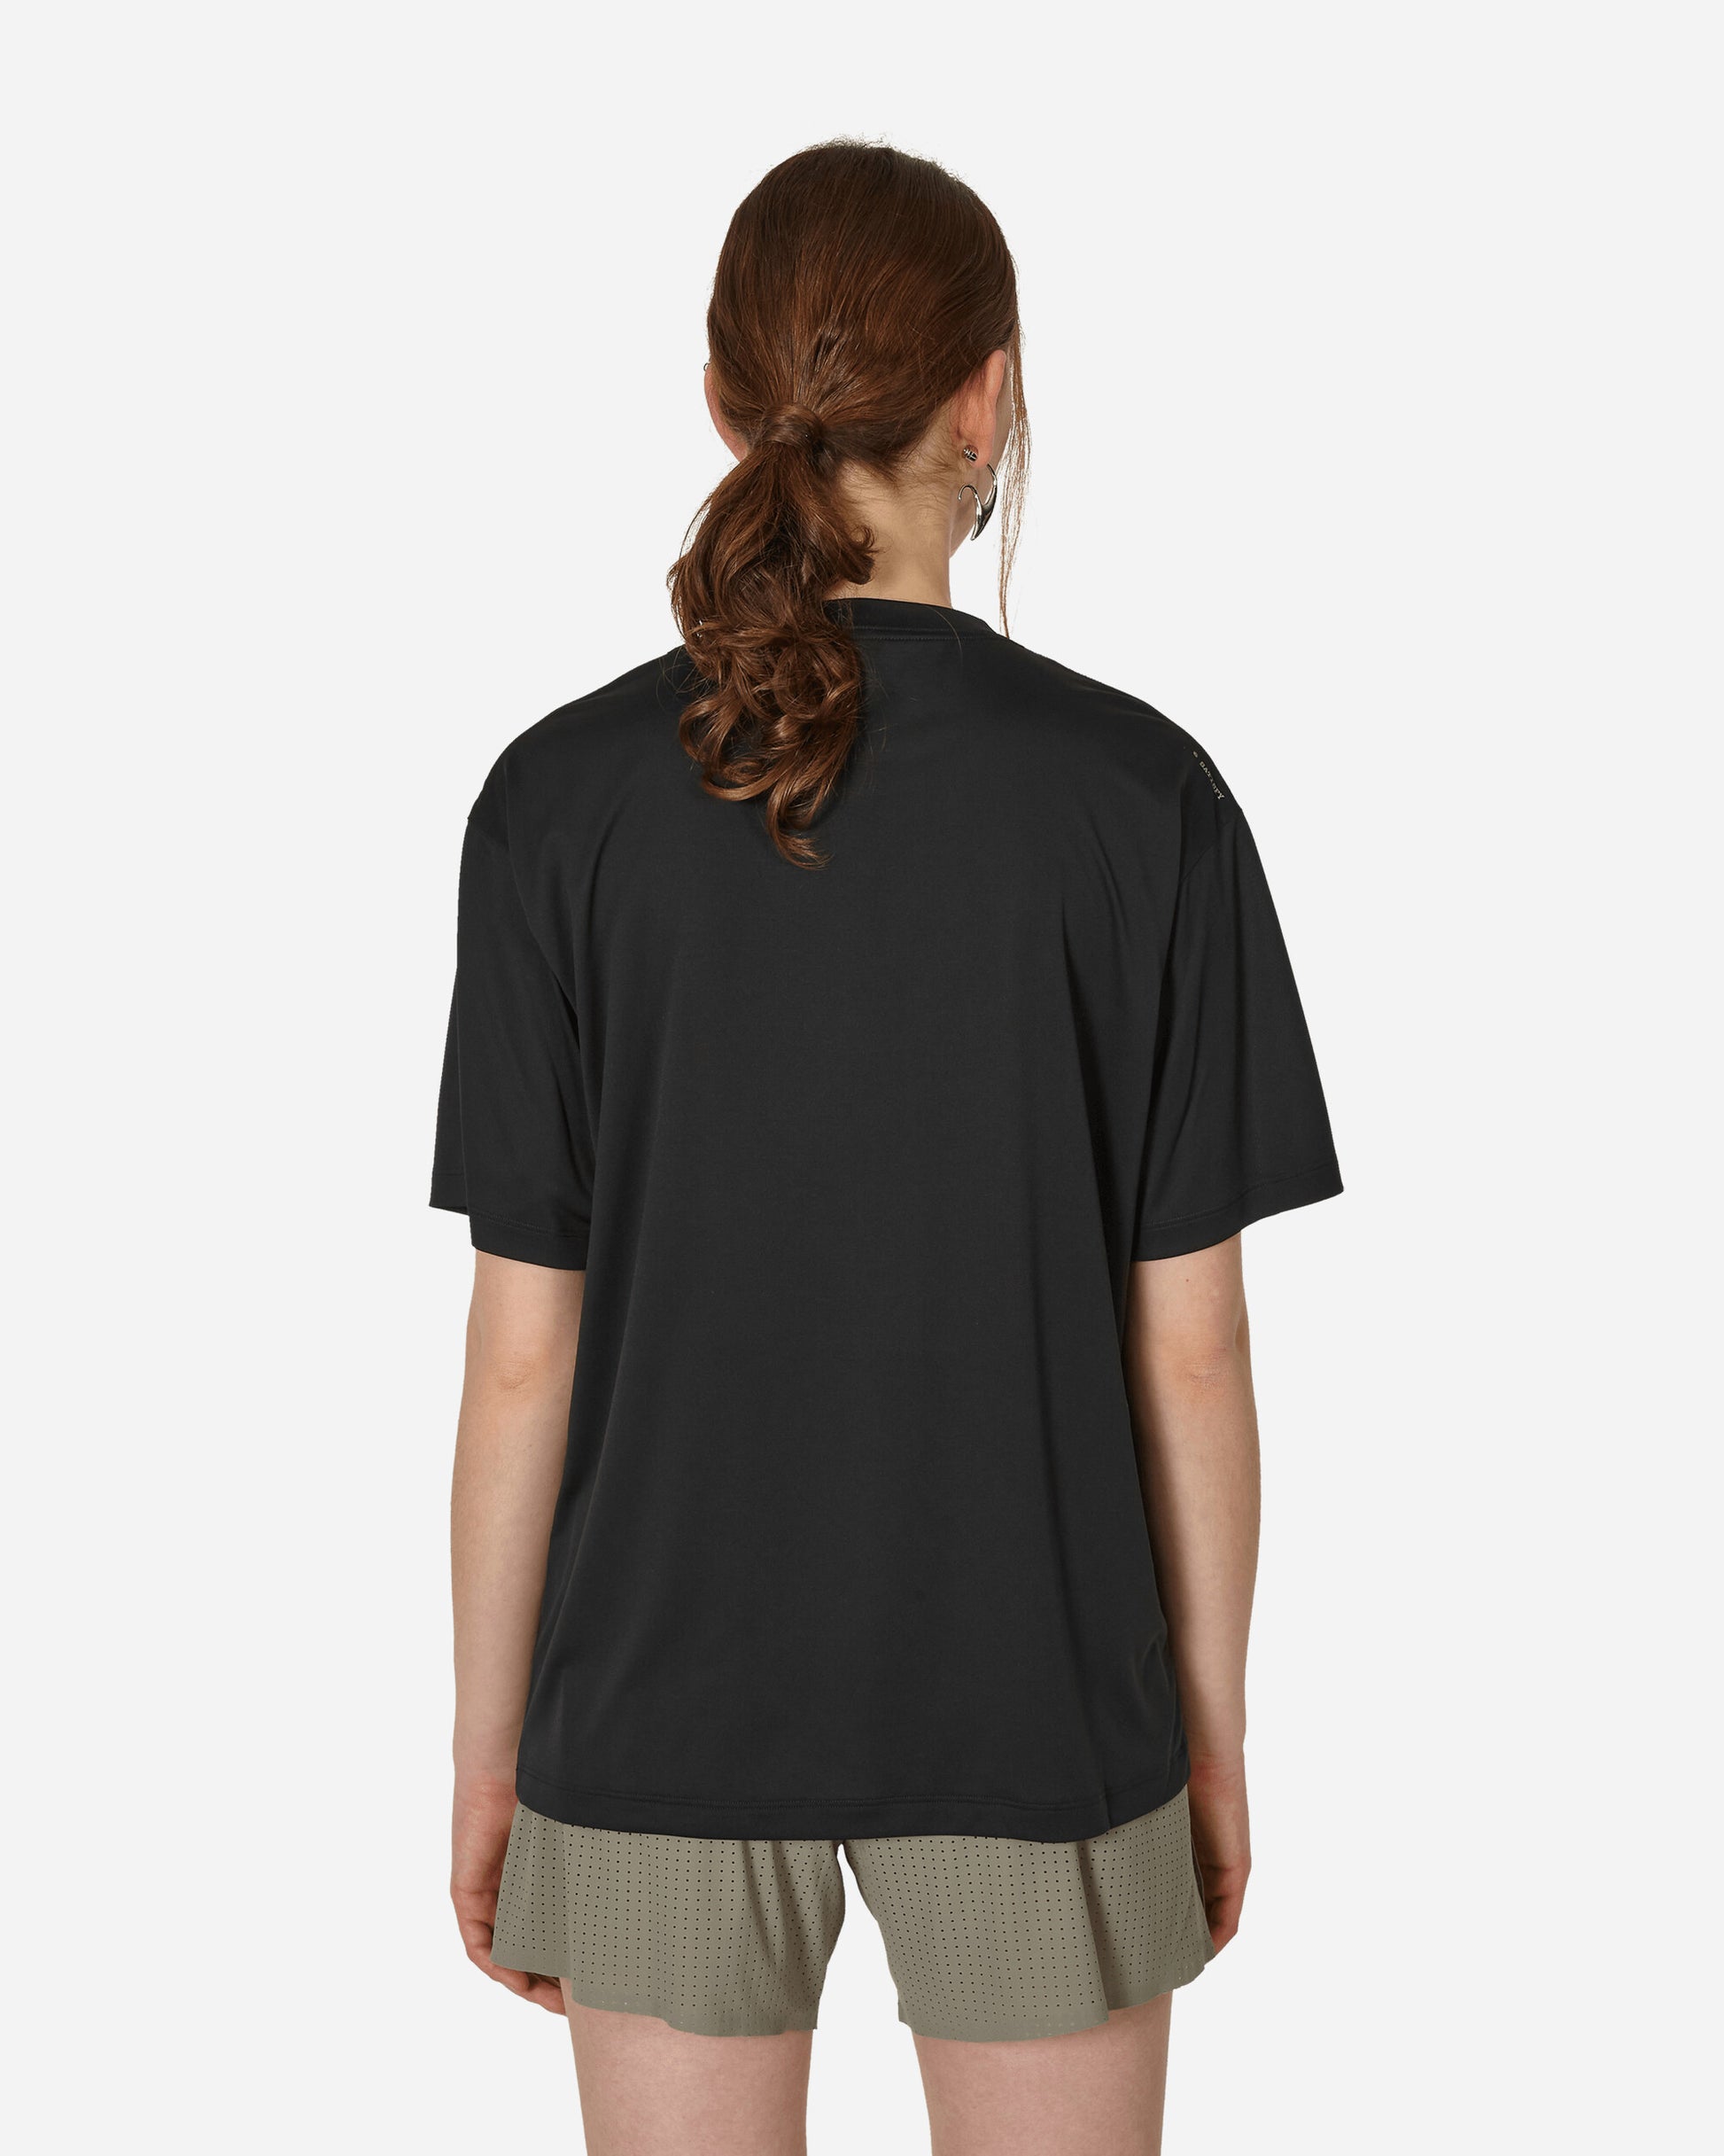 Satisfy Auralite T-Shirt Black T-Shirts Shortsleeve 5086 BK-OV